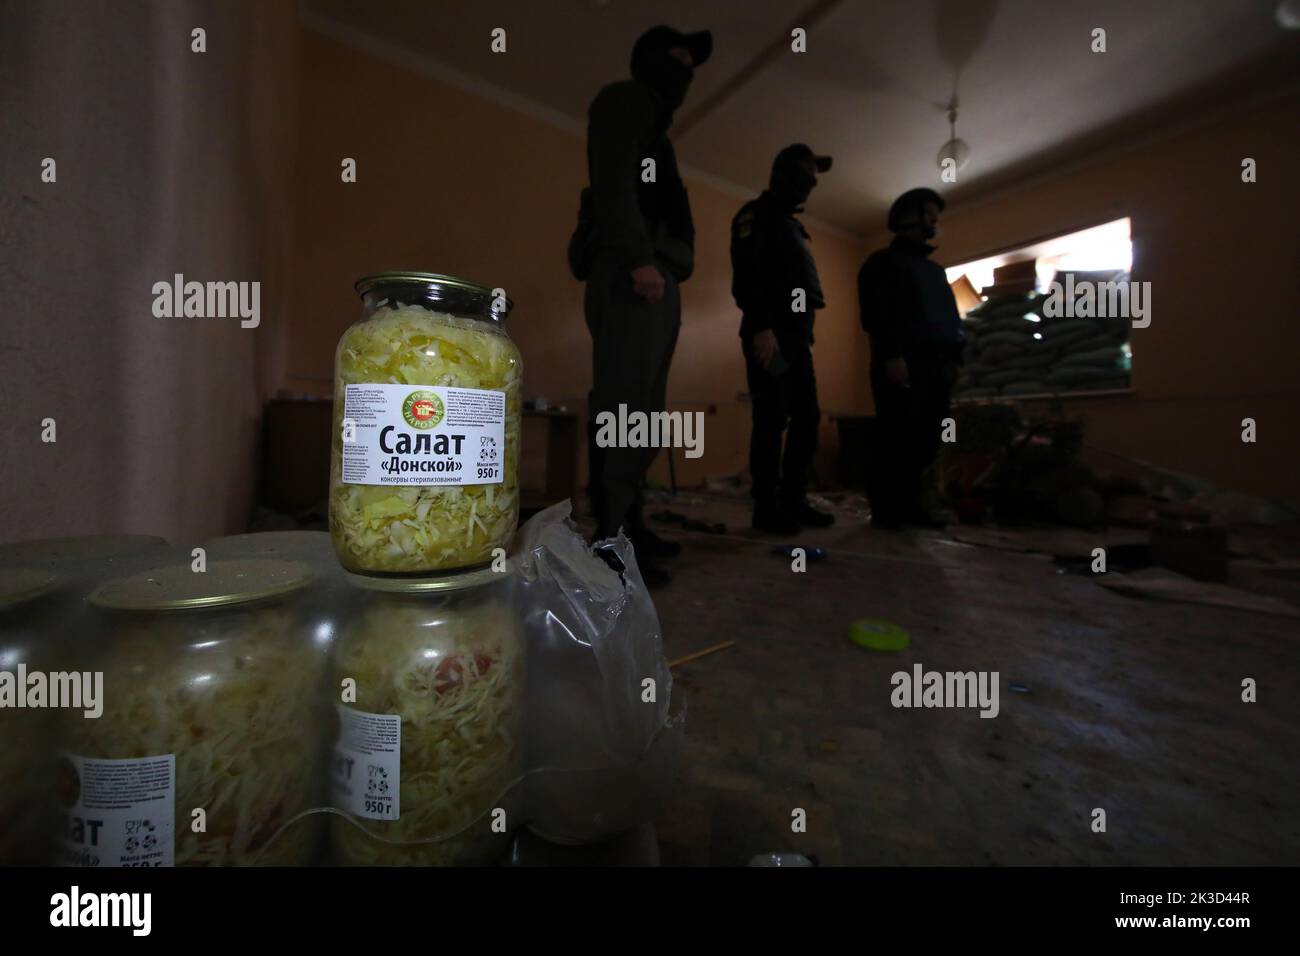 LYPTSI, UKRAINE - 24. SEPTEMBER 2022 - während der laufenden Untersuchung werden die von den fliehenden russischen Invasoren zurückgelassenen Gläser mit konservierten Salaten abgebildet Stockfoto